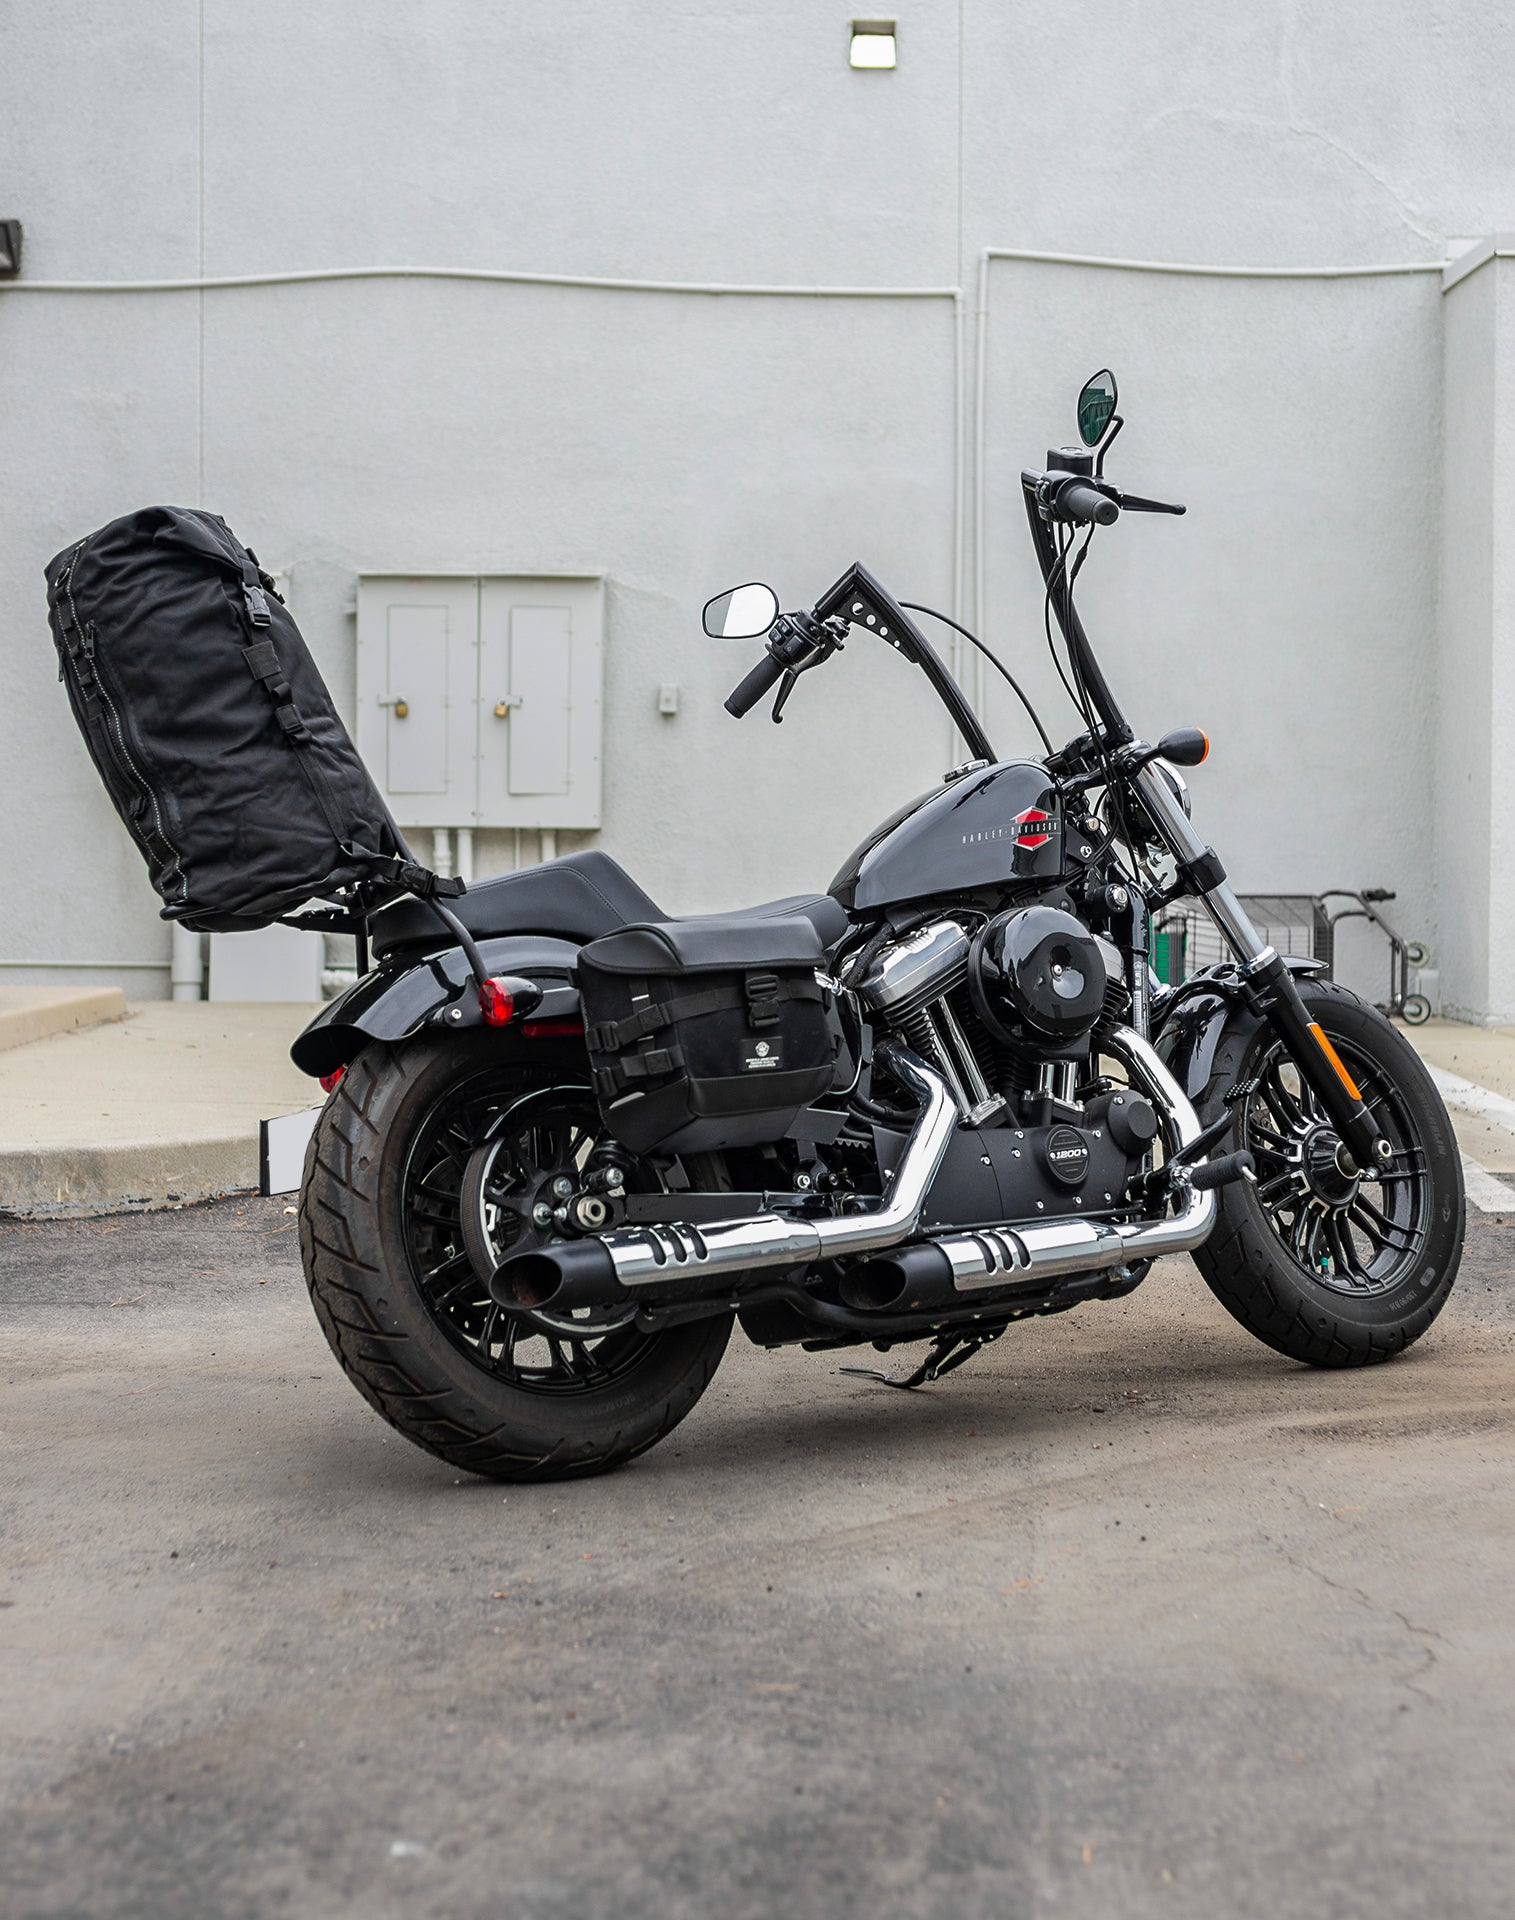 35L - Renegade XL Indian Motorcycle Sissy Bar Bag